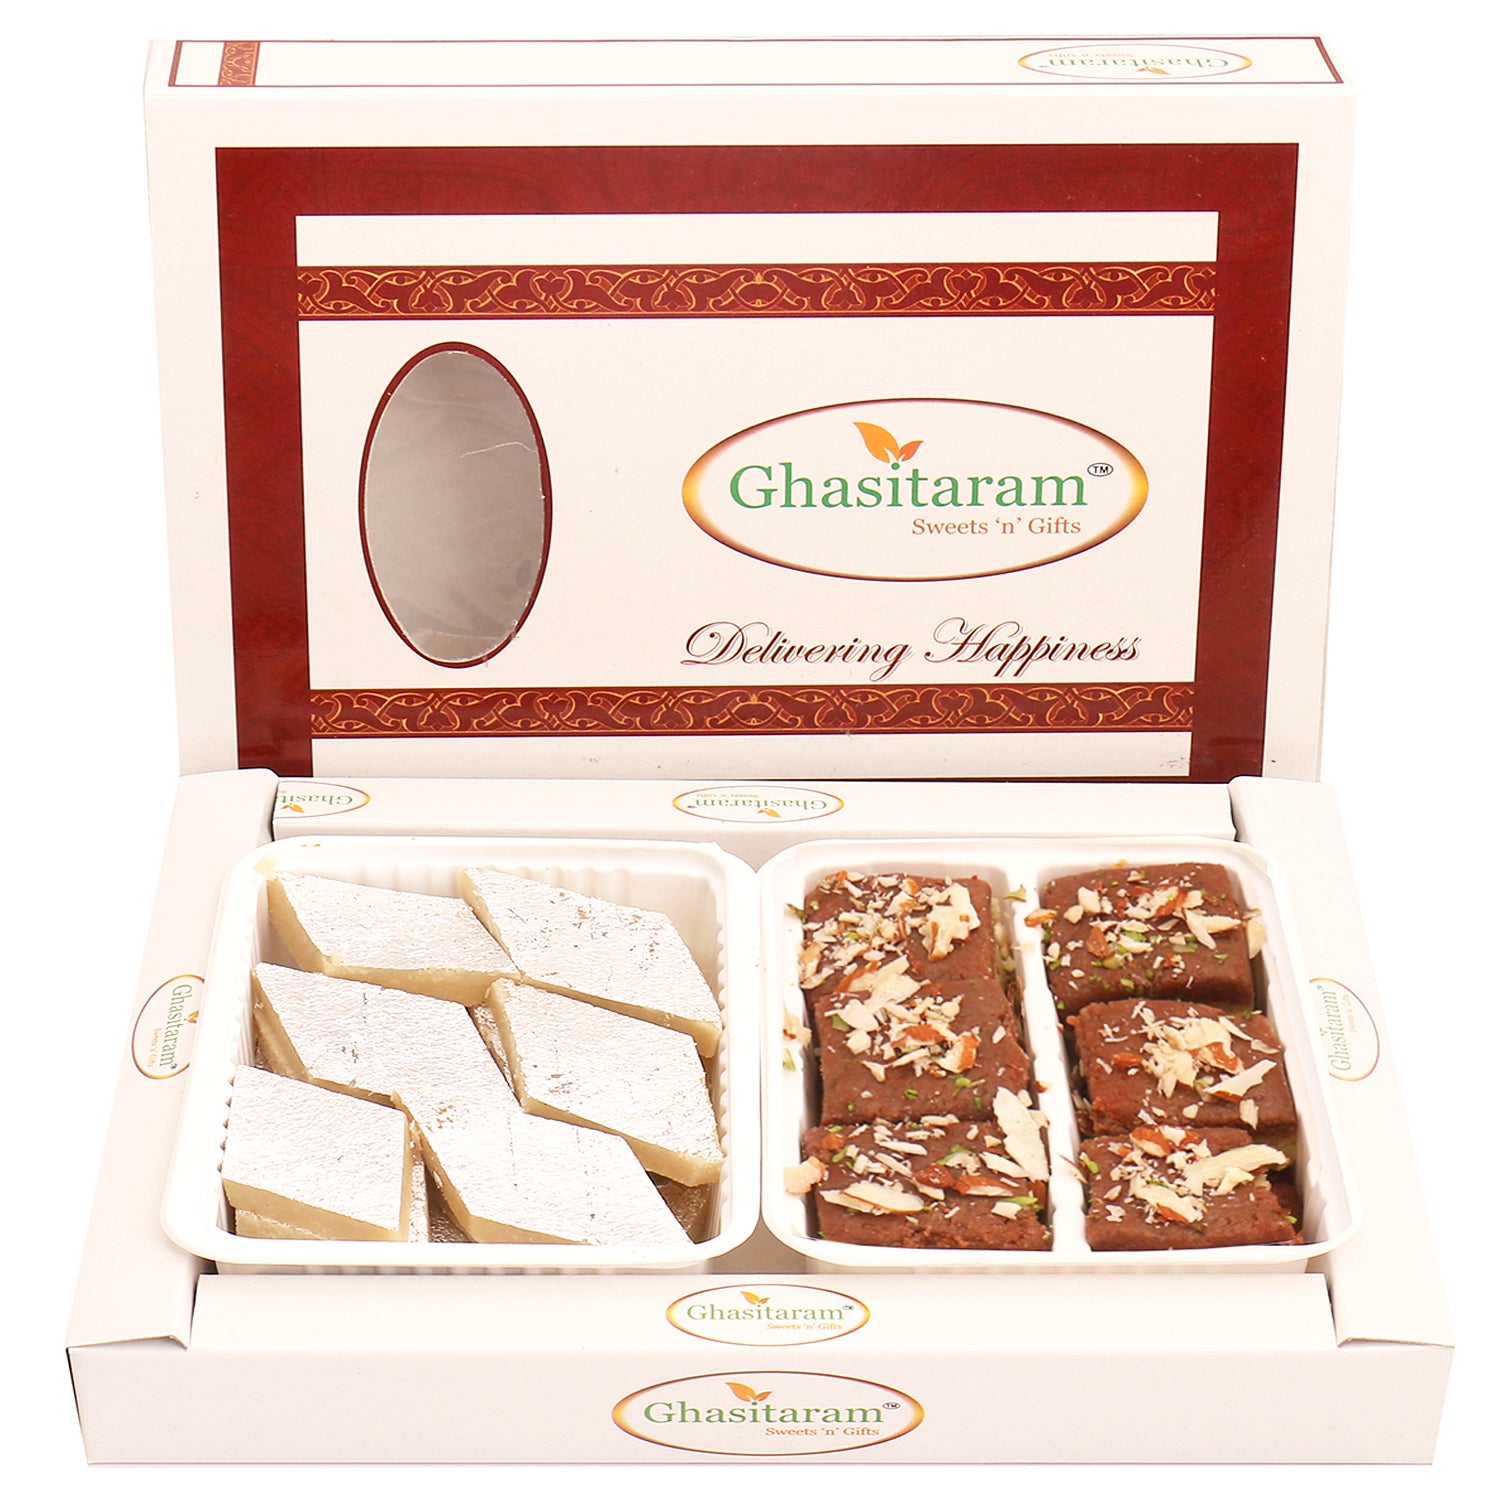 Buy Haldiram's Gift Pack - Sweet & Spicy Online at Best Price of Rs 315 -  bigbasket